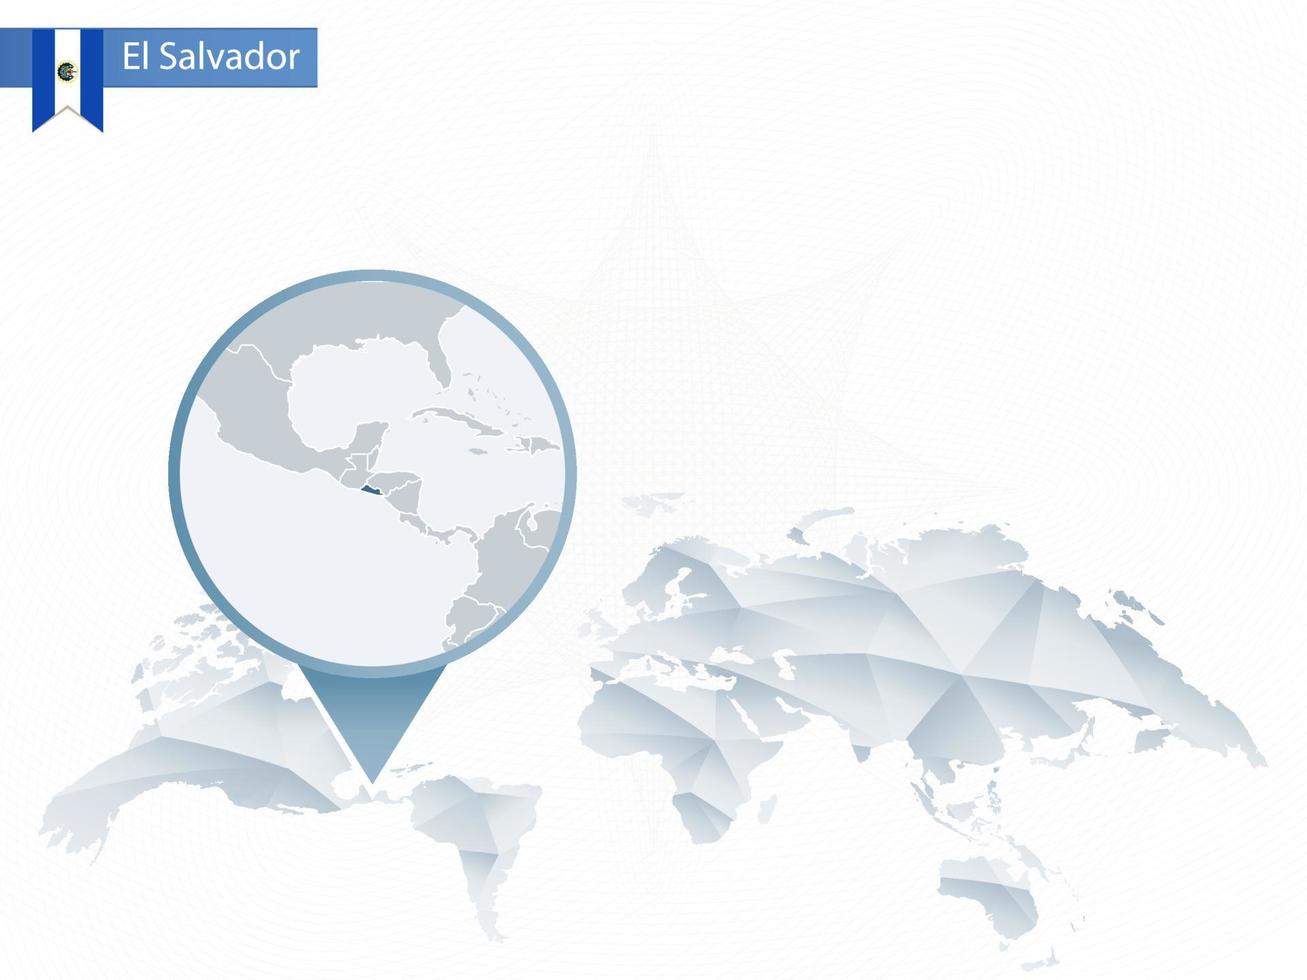 abstracte afgeronde wereldkaart met vastgezette gedetailleerde kaart van El Salvador. vector